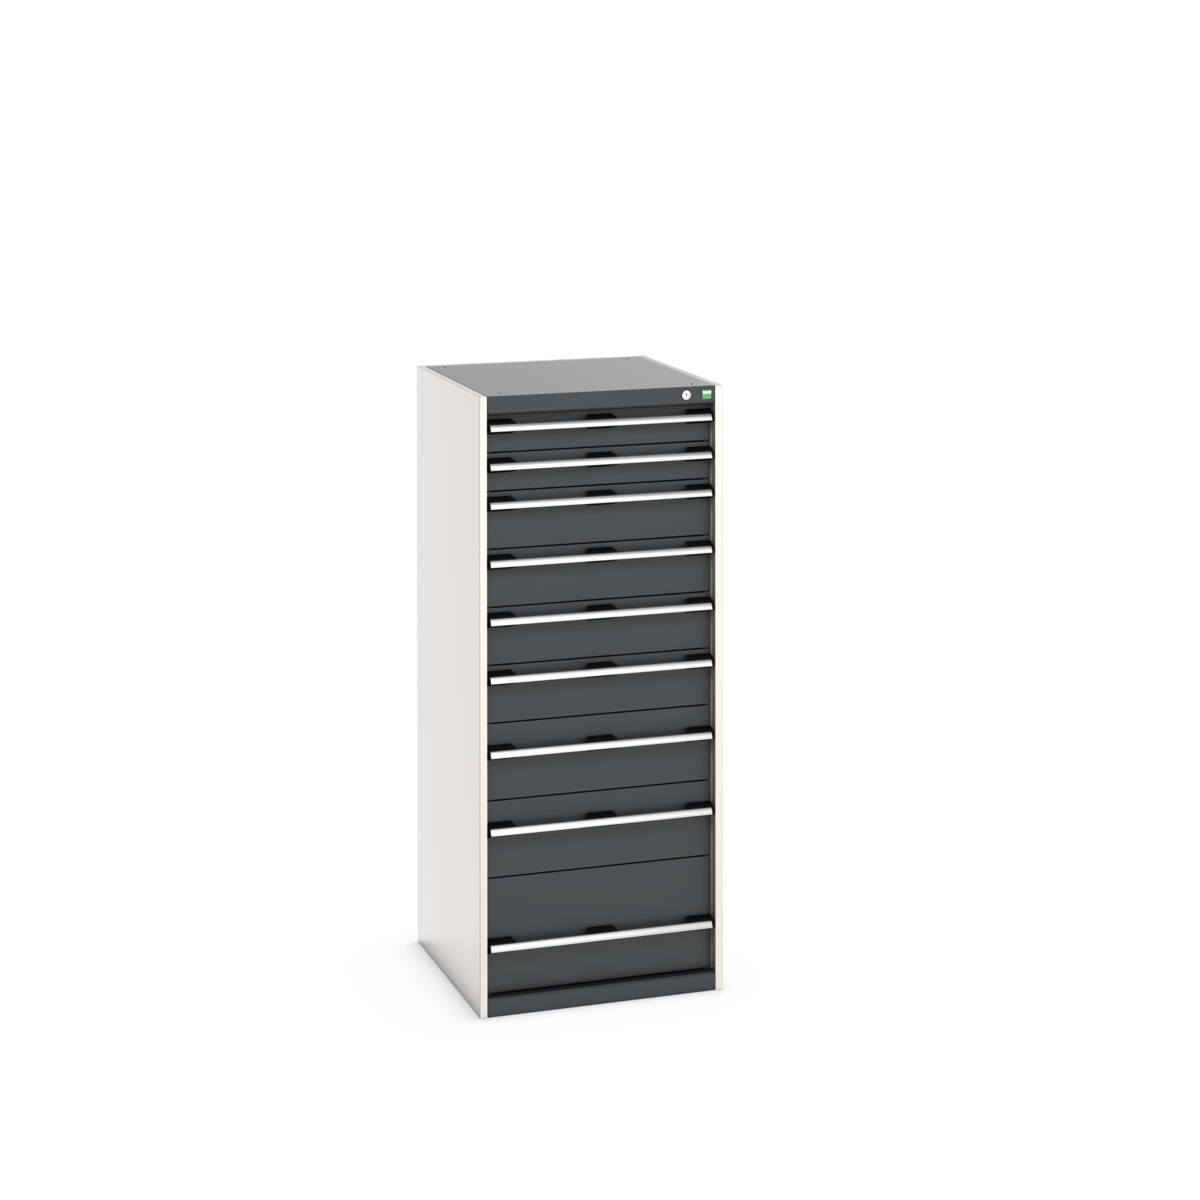 40027045.19V - cubio drawer cabinet